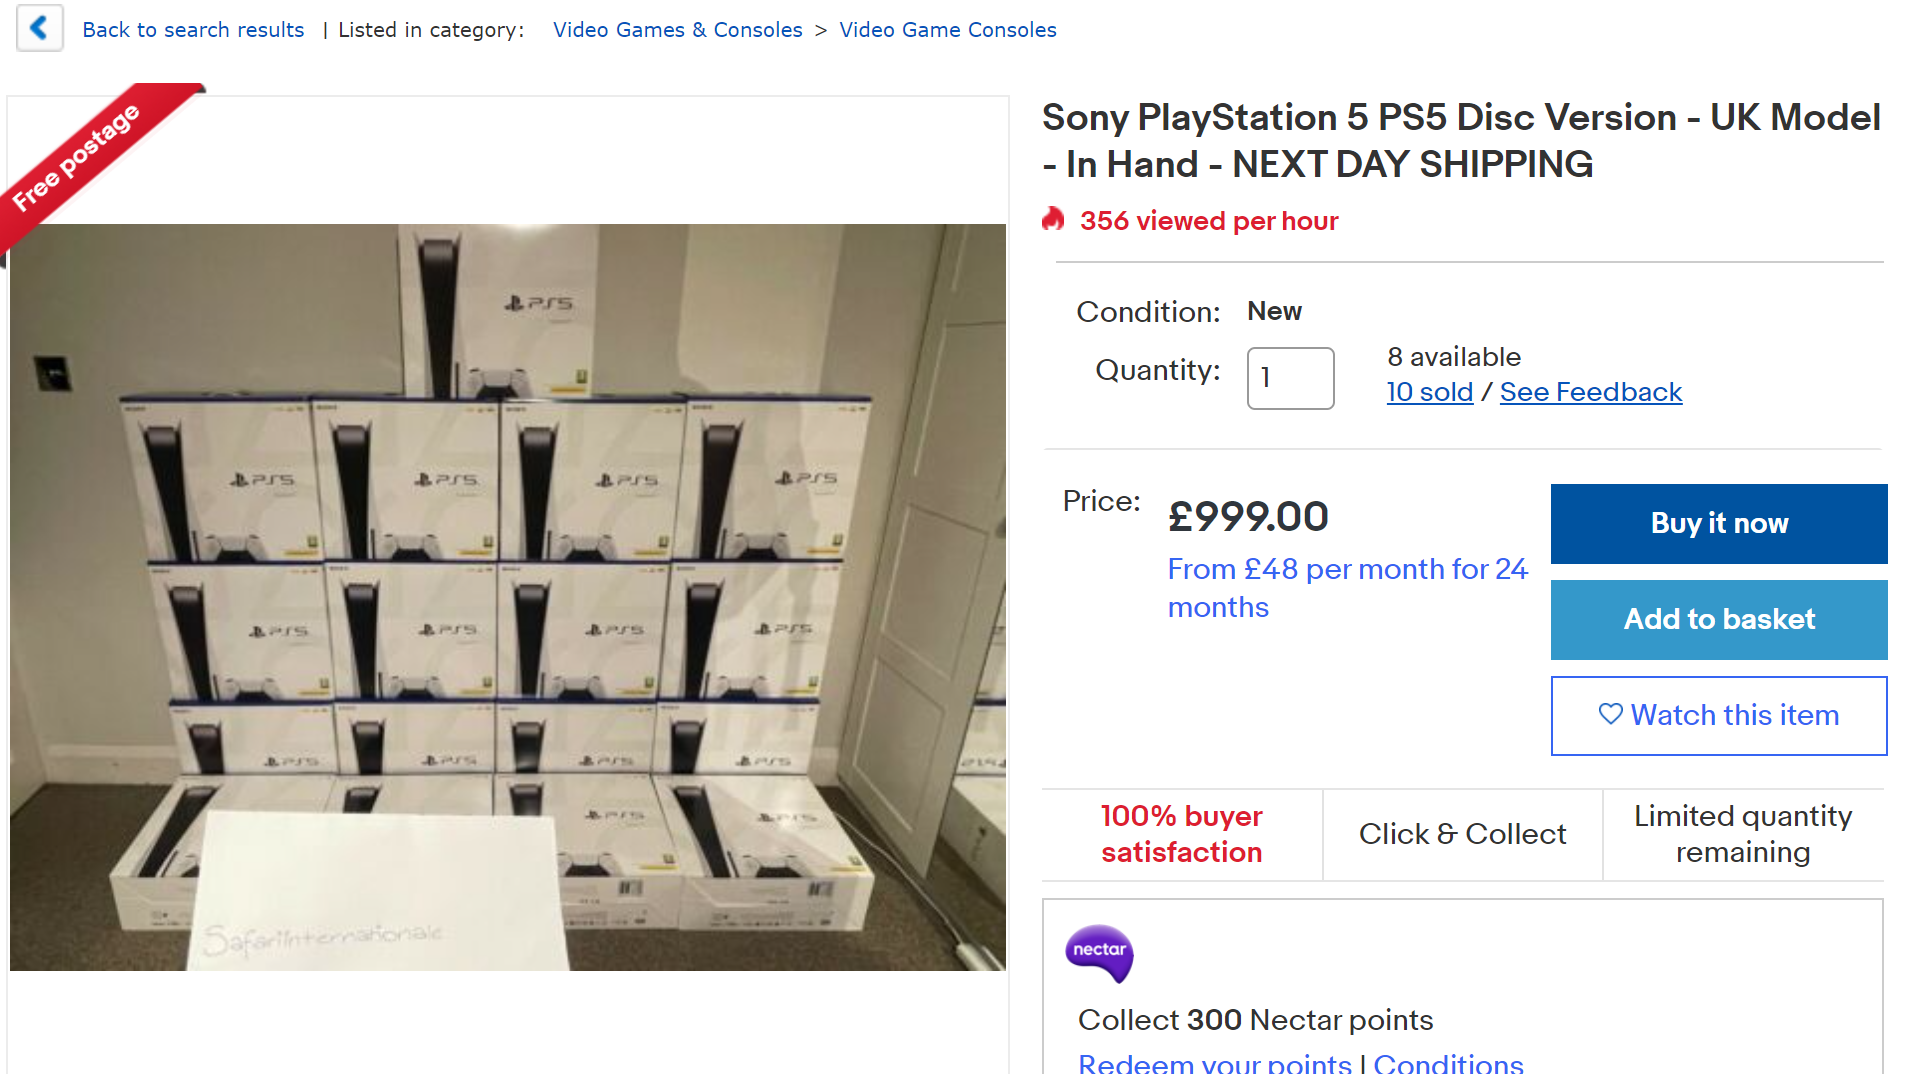 На снимке экрана показана стопка PlayStation 5 в гостиной, каждая из которых продается по цене 999 фунтов стерлингов